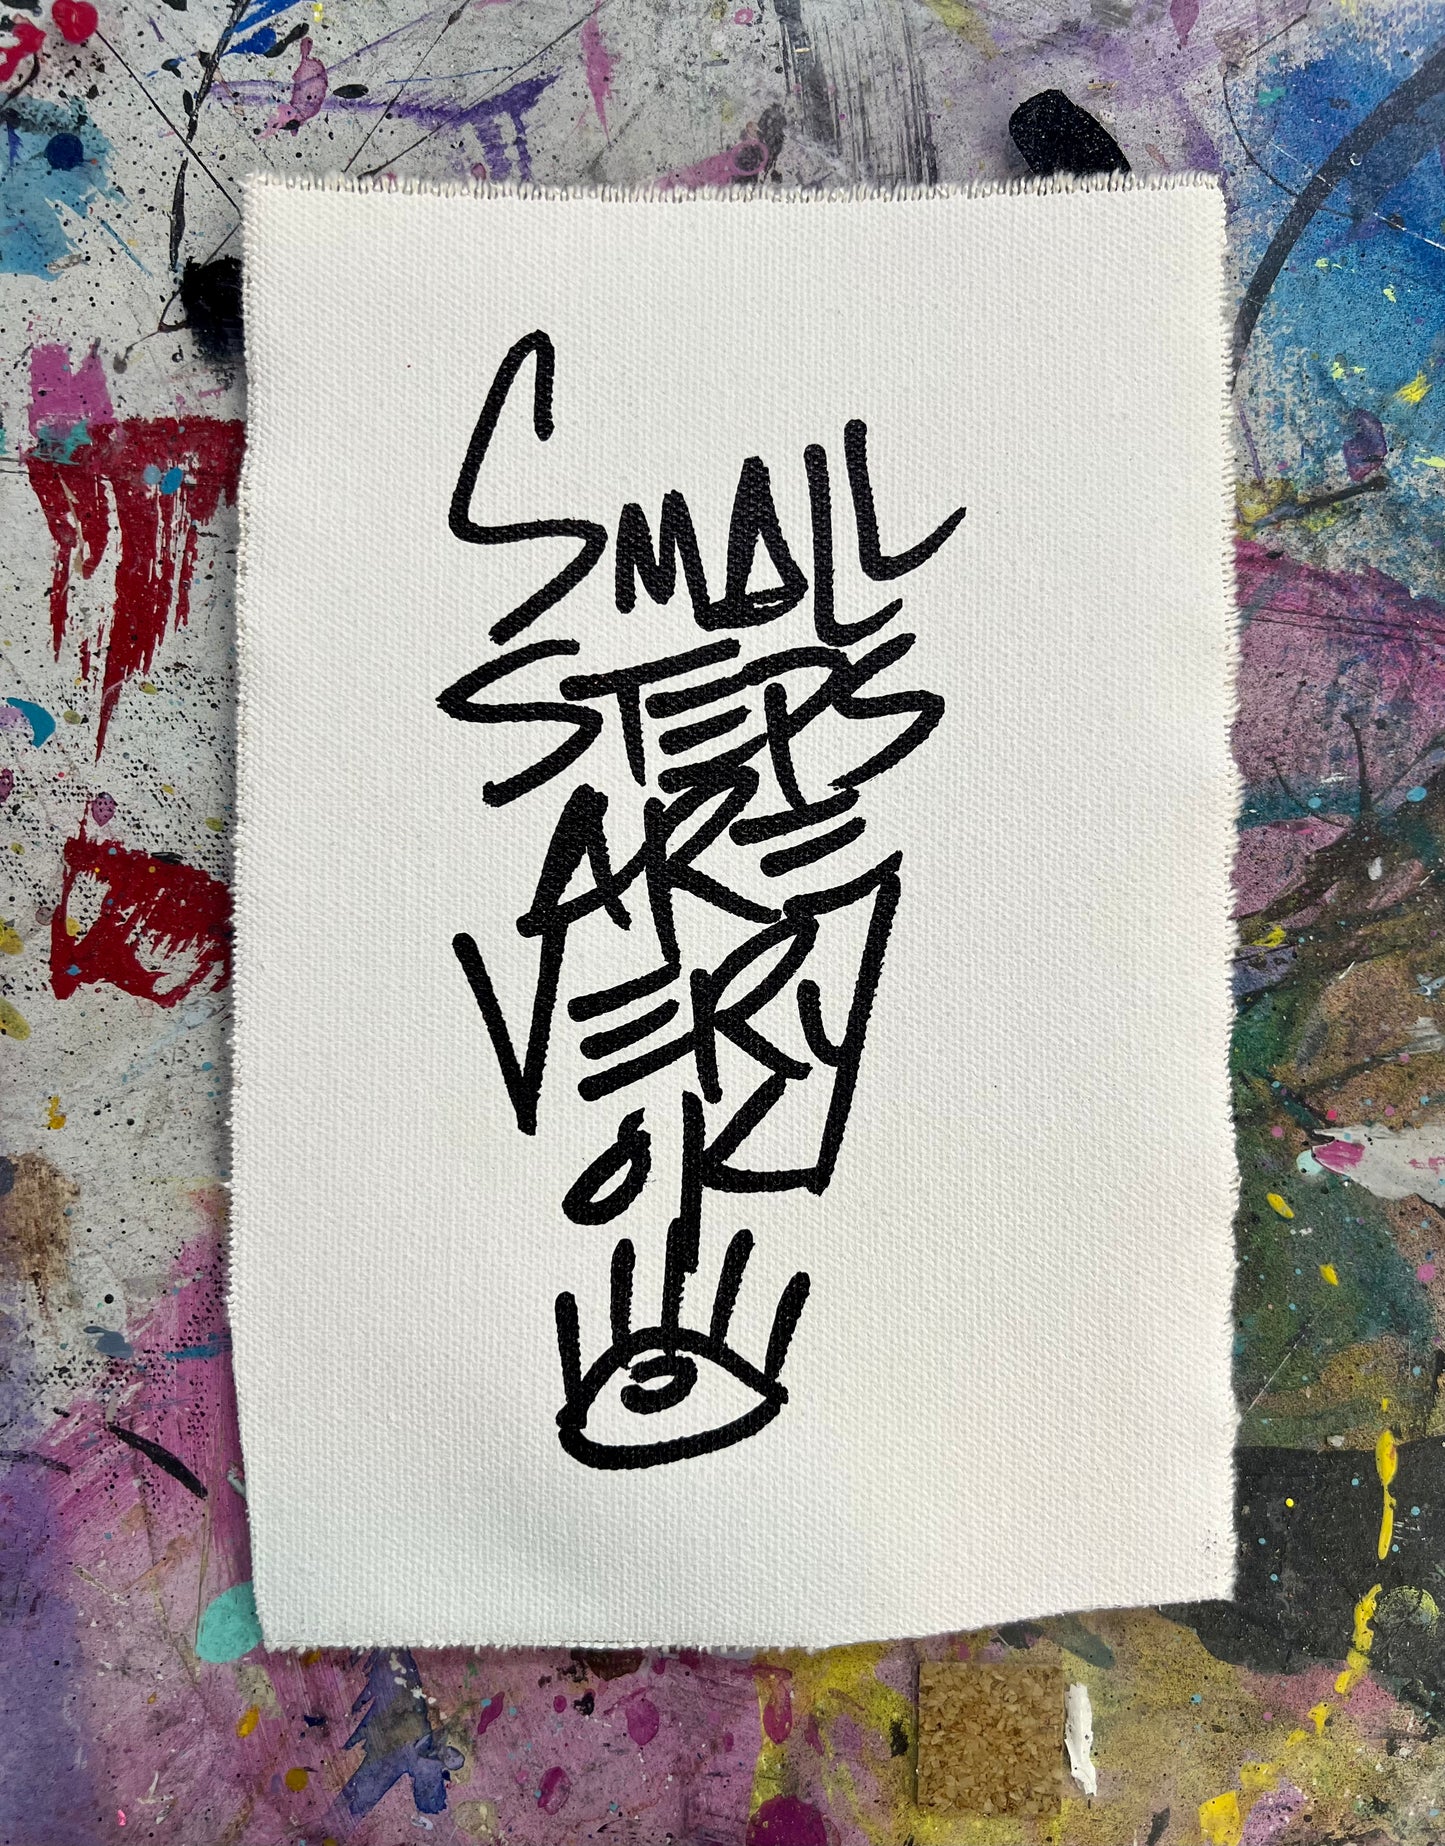 Small steps are very ok / Black & white pocket art / July 2023